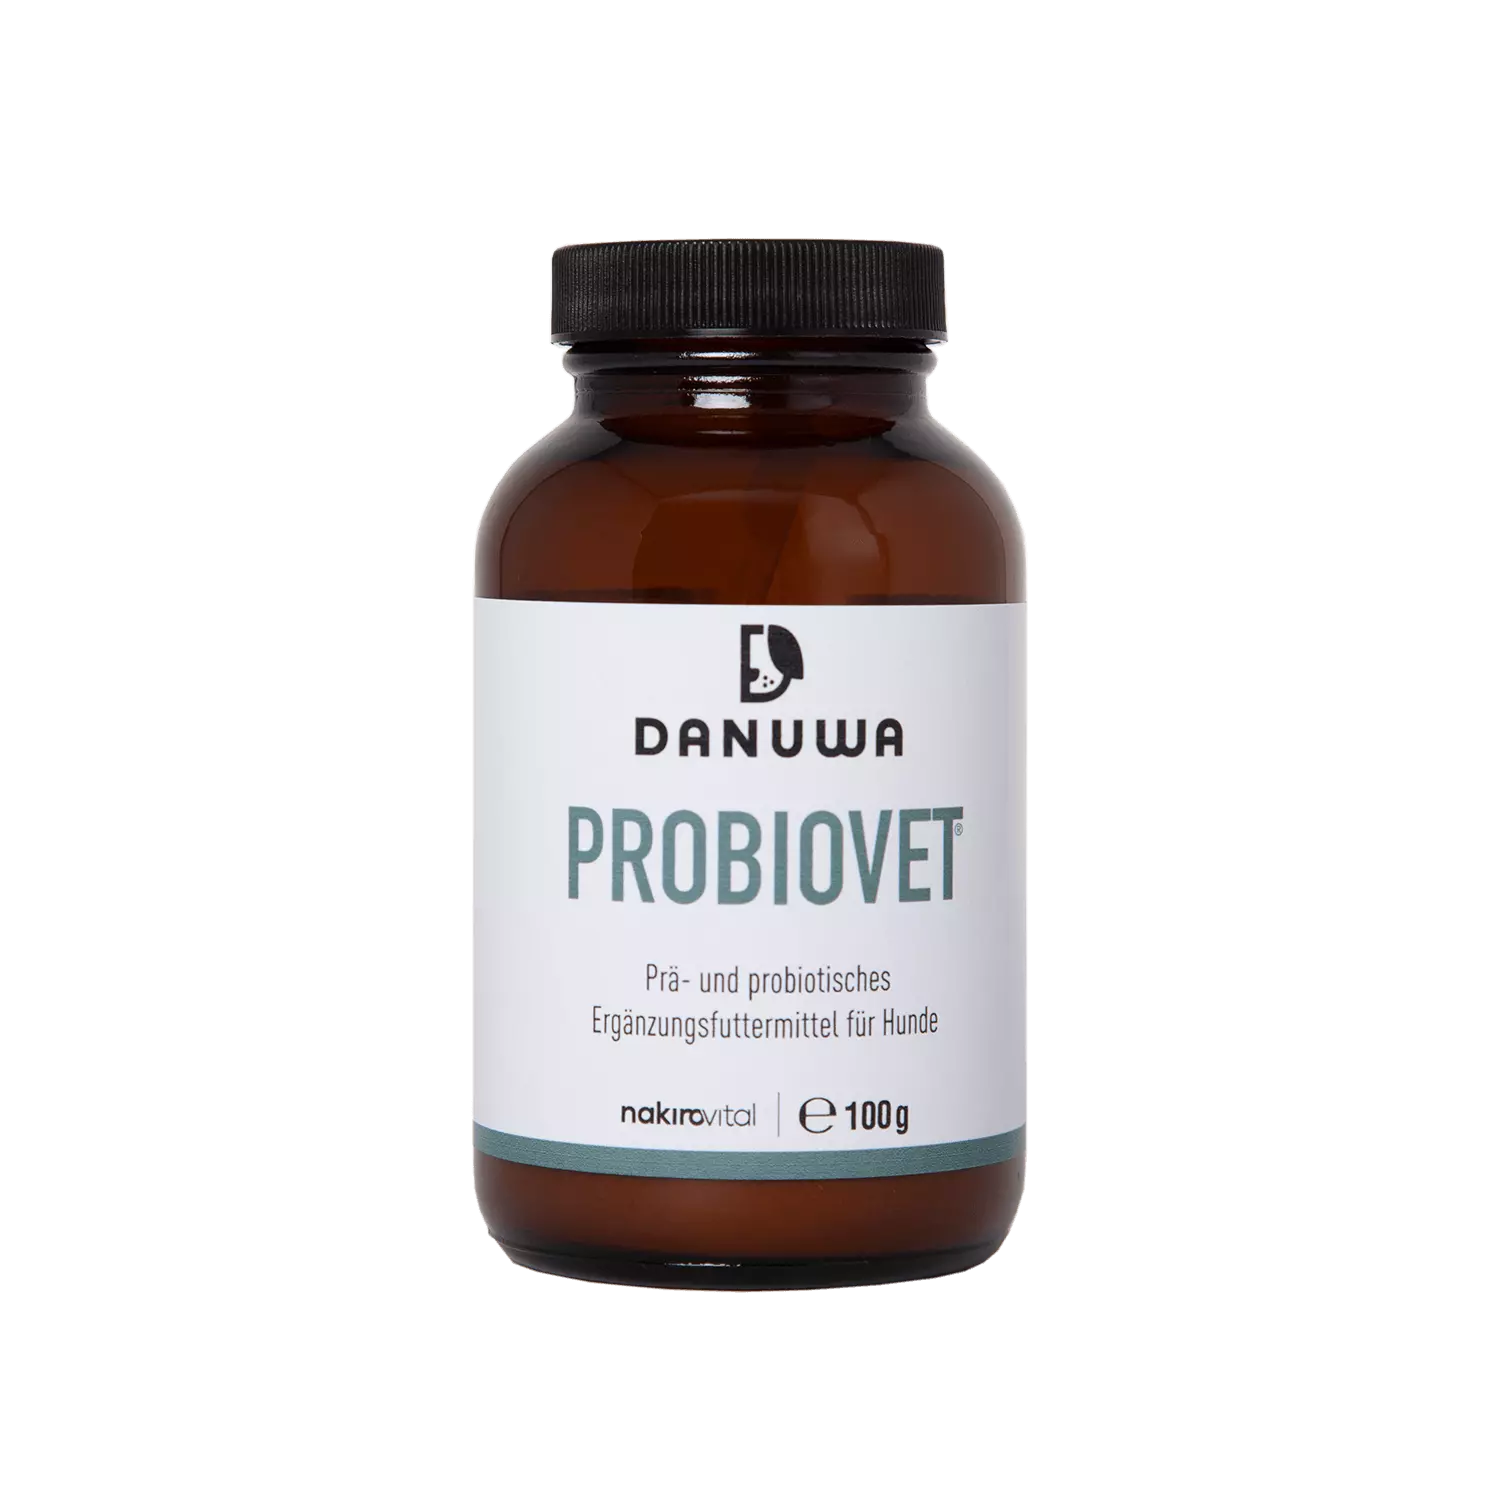 DANUWA Probiovet® - Prä- und probiotisches Ergänzungsfuttermittel für Hunde